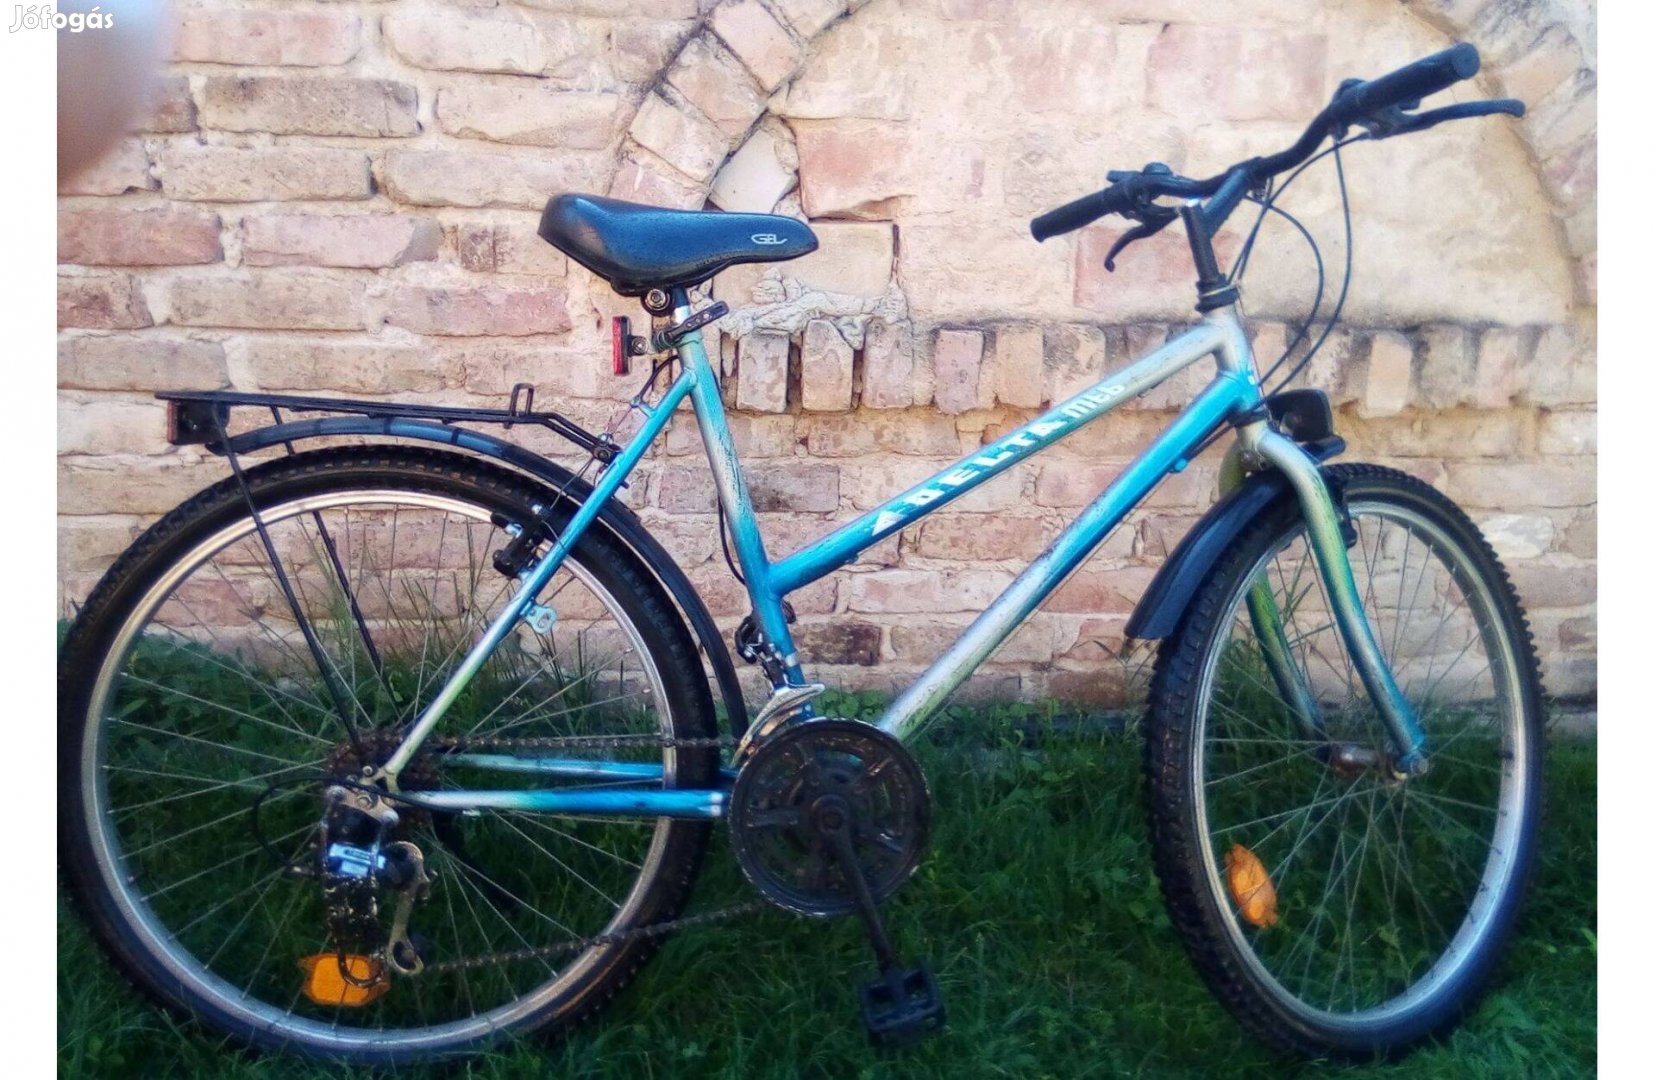 Mounain Bike, kerékpár bicikli